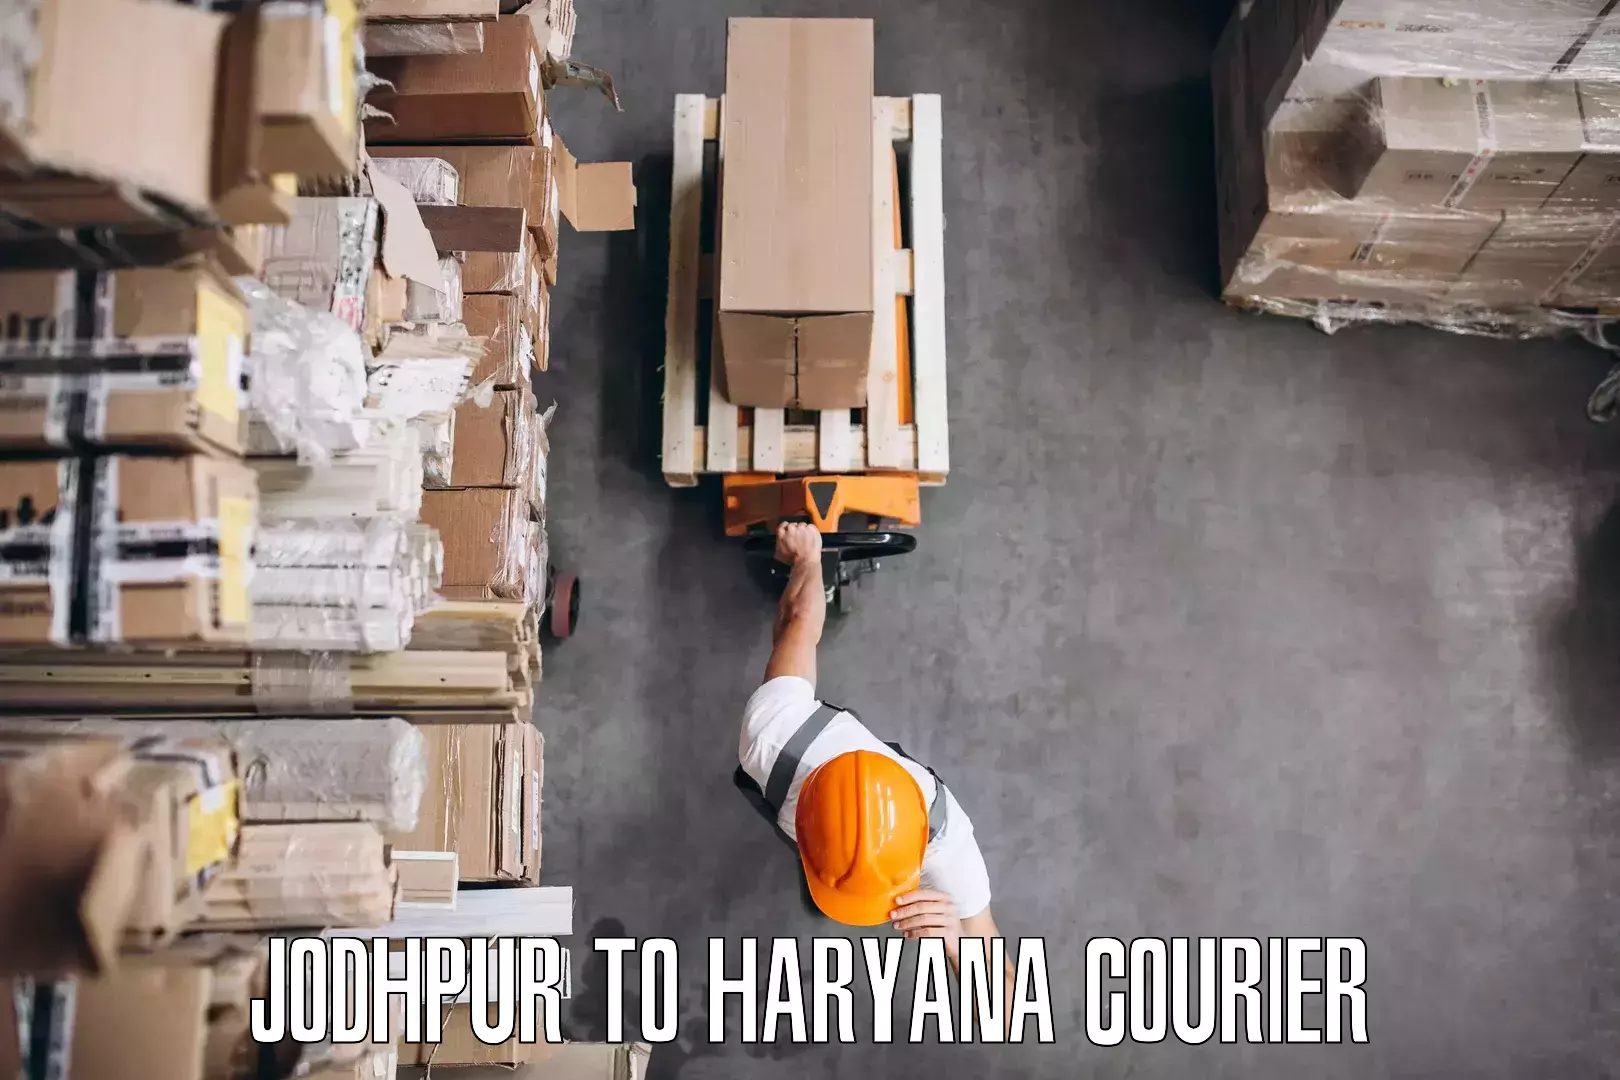 Furniture delivery service Jodhpur to Yamuna Nagar